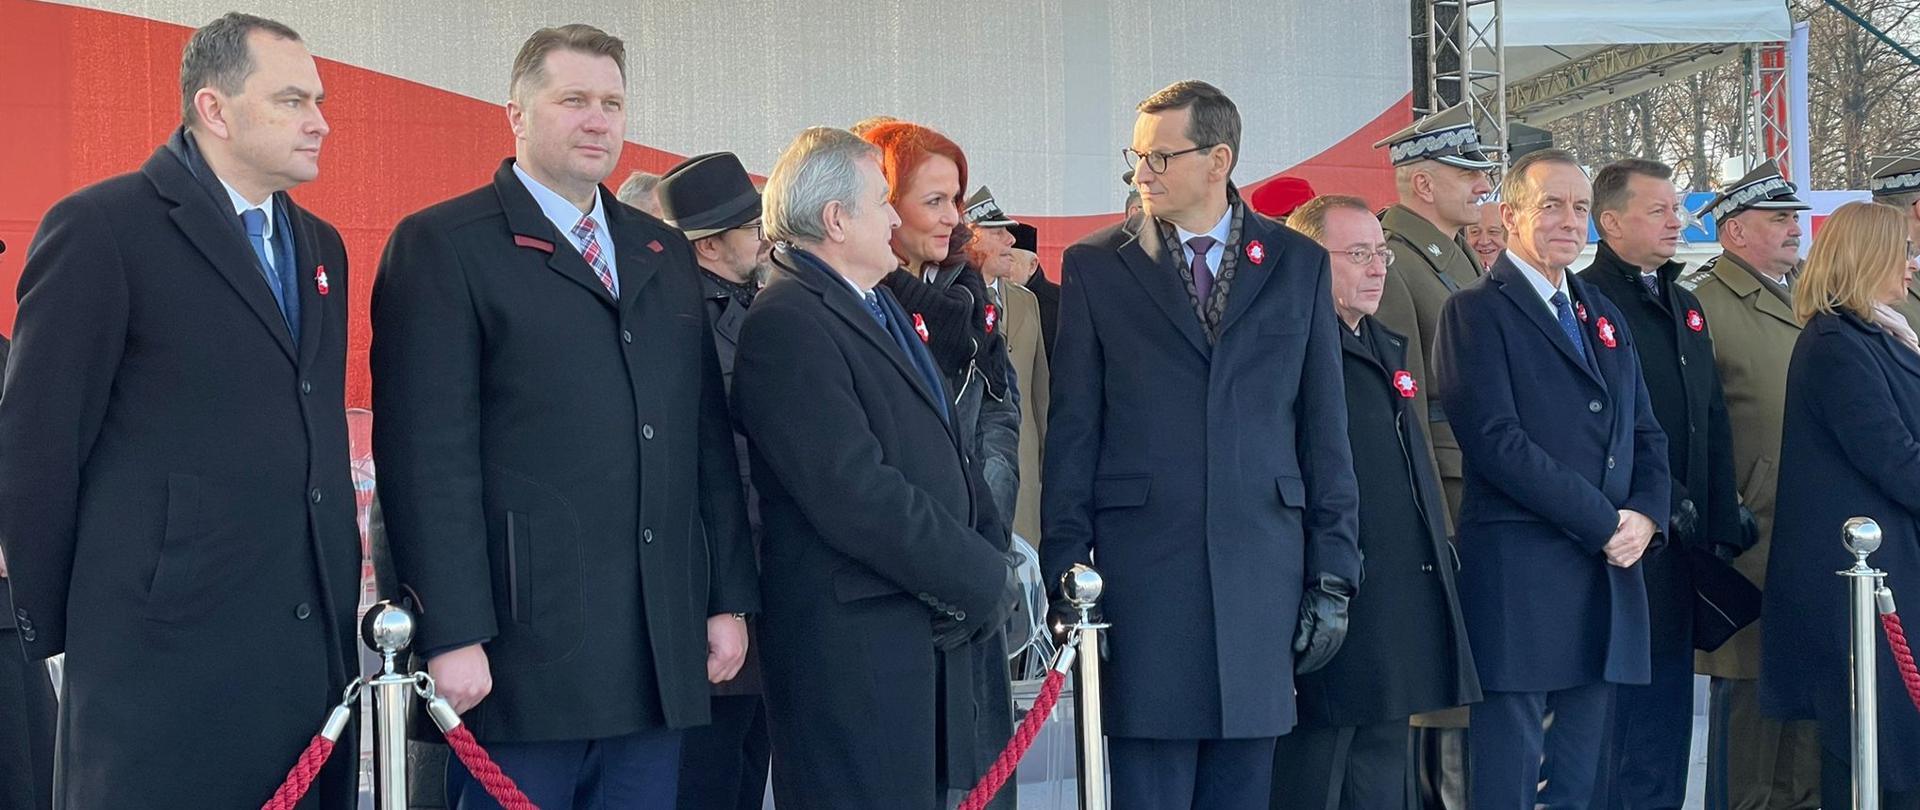 Uroczystości z okazji Narodowego Święta Niepodległości z udziałem ministrem Przemysławem Czarnkiem, minister Przemysław Czarnek stoi na trybunie honorowej podczas uroczystości, z tyłu wyświetlana jest flaga Polski.